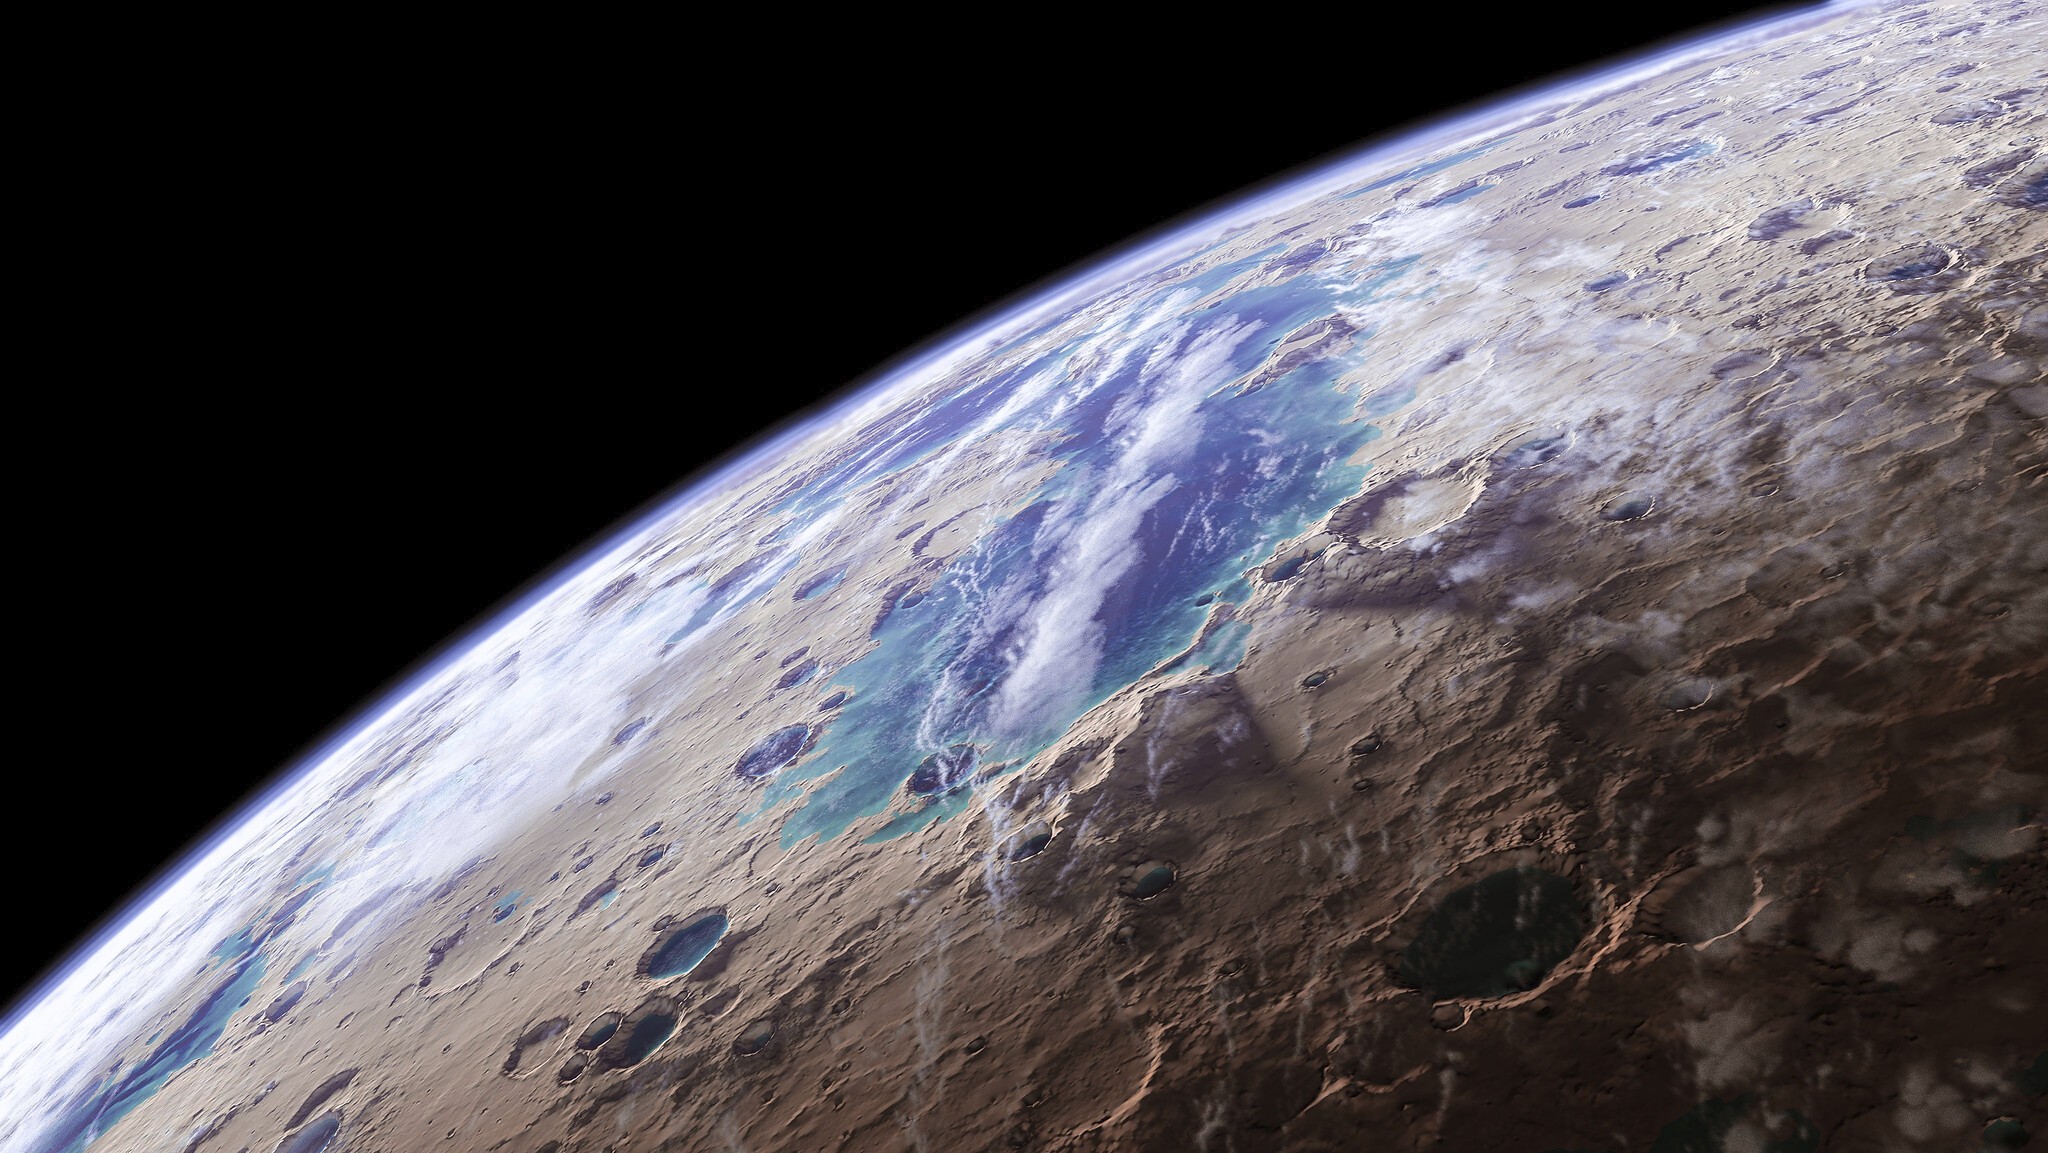 Imagens revelam detalhes nunca antes vistos dos rios de Marte (Foto: NASA JPL GSFC Kevin Gill)